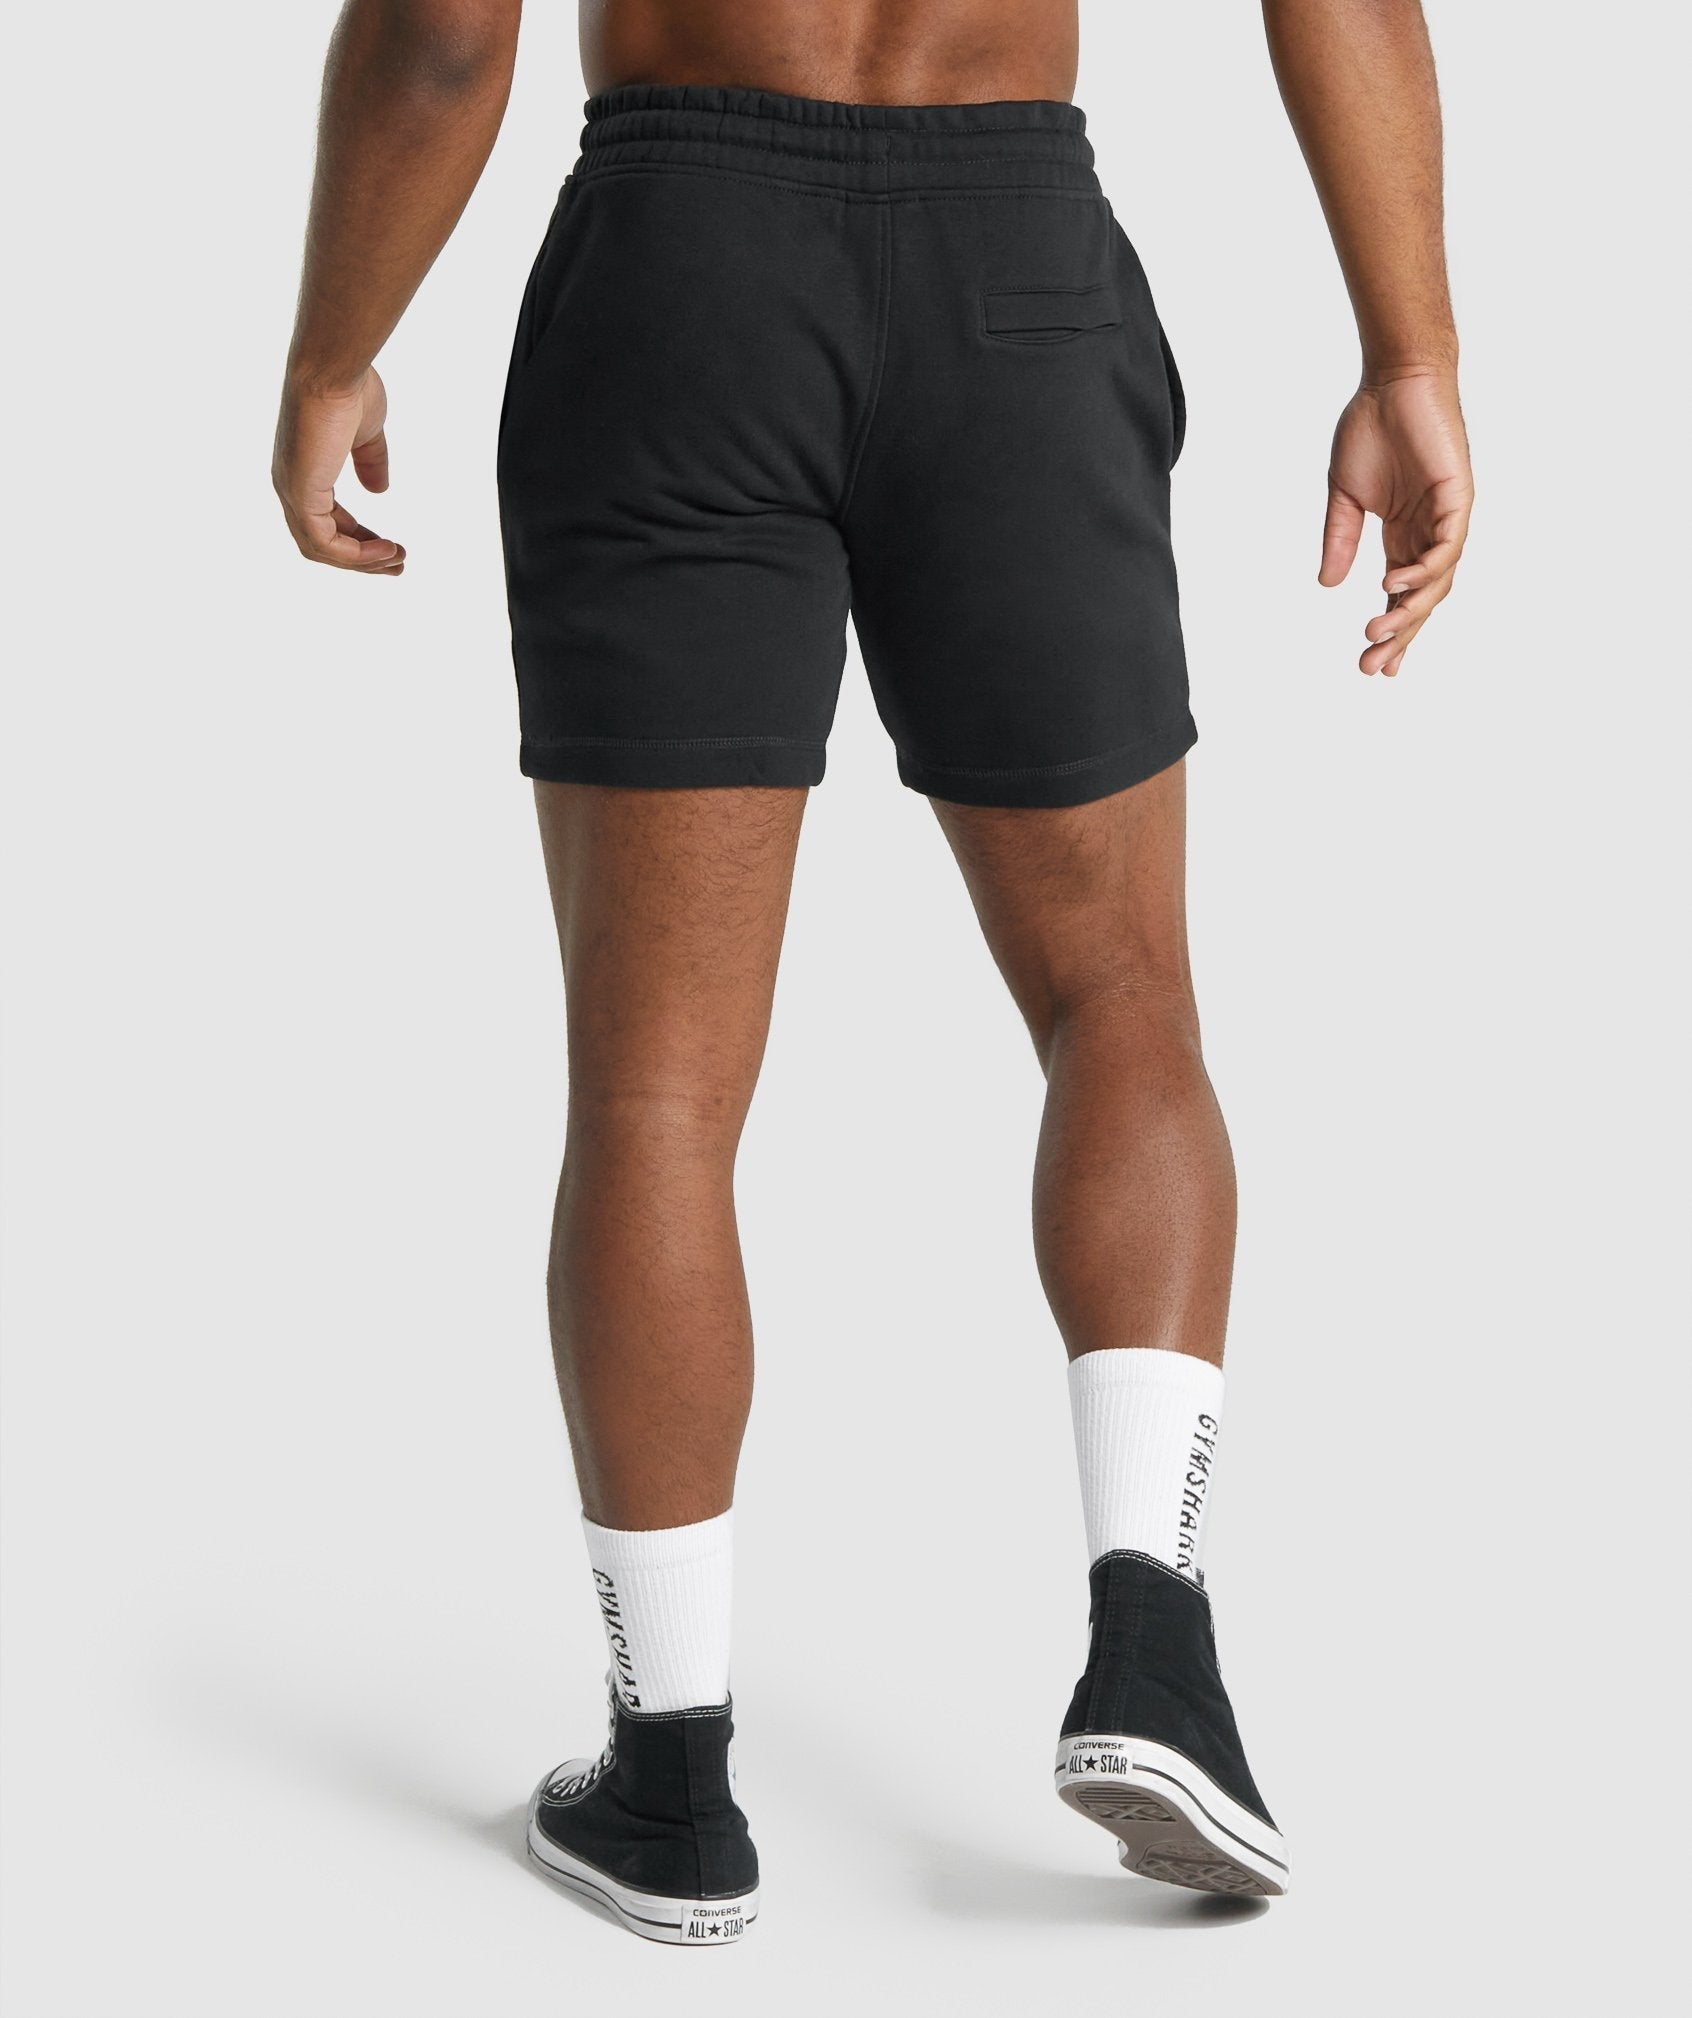 Black Gym Shark Shorts